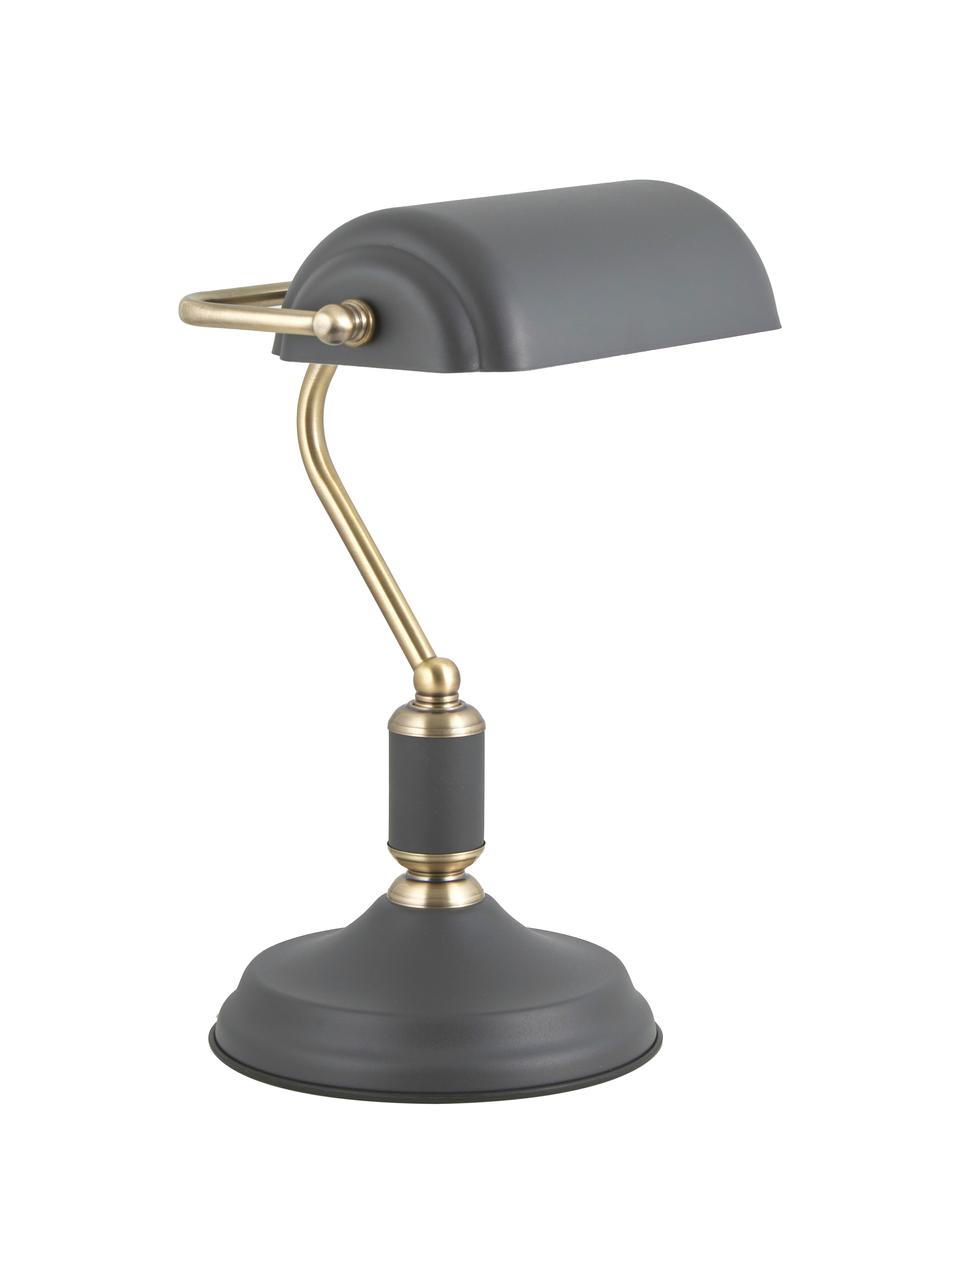 Lampa biurkowa z metalu w stylu retro Bank, Antracytowy, odcienie mosiądzu, S 22 x W 34 cm